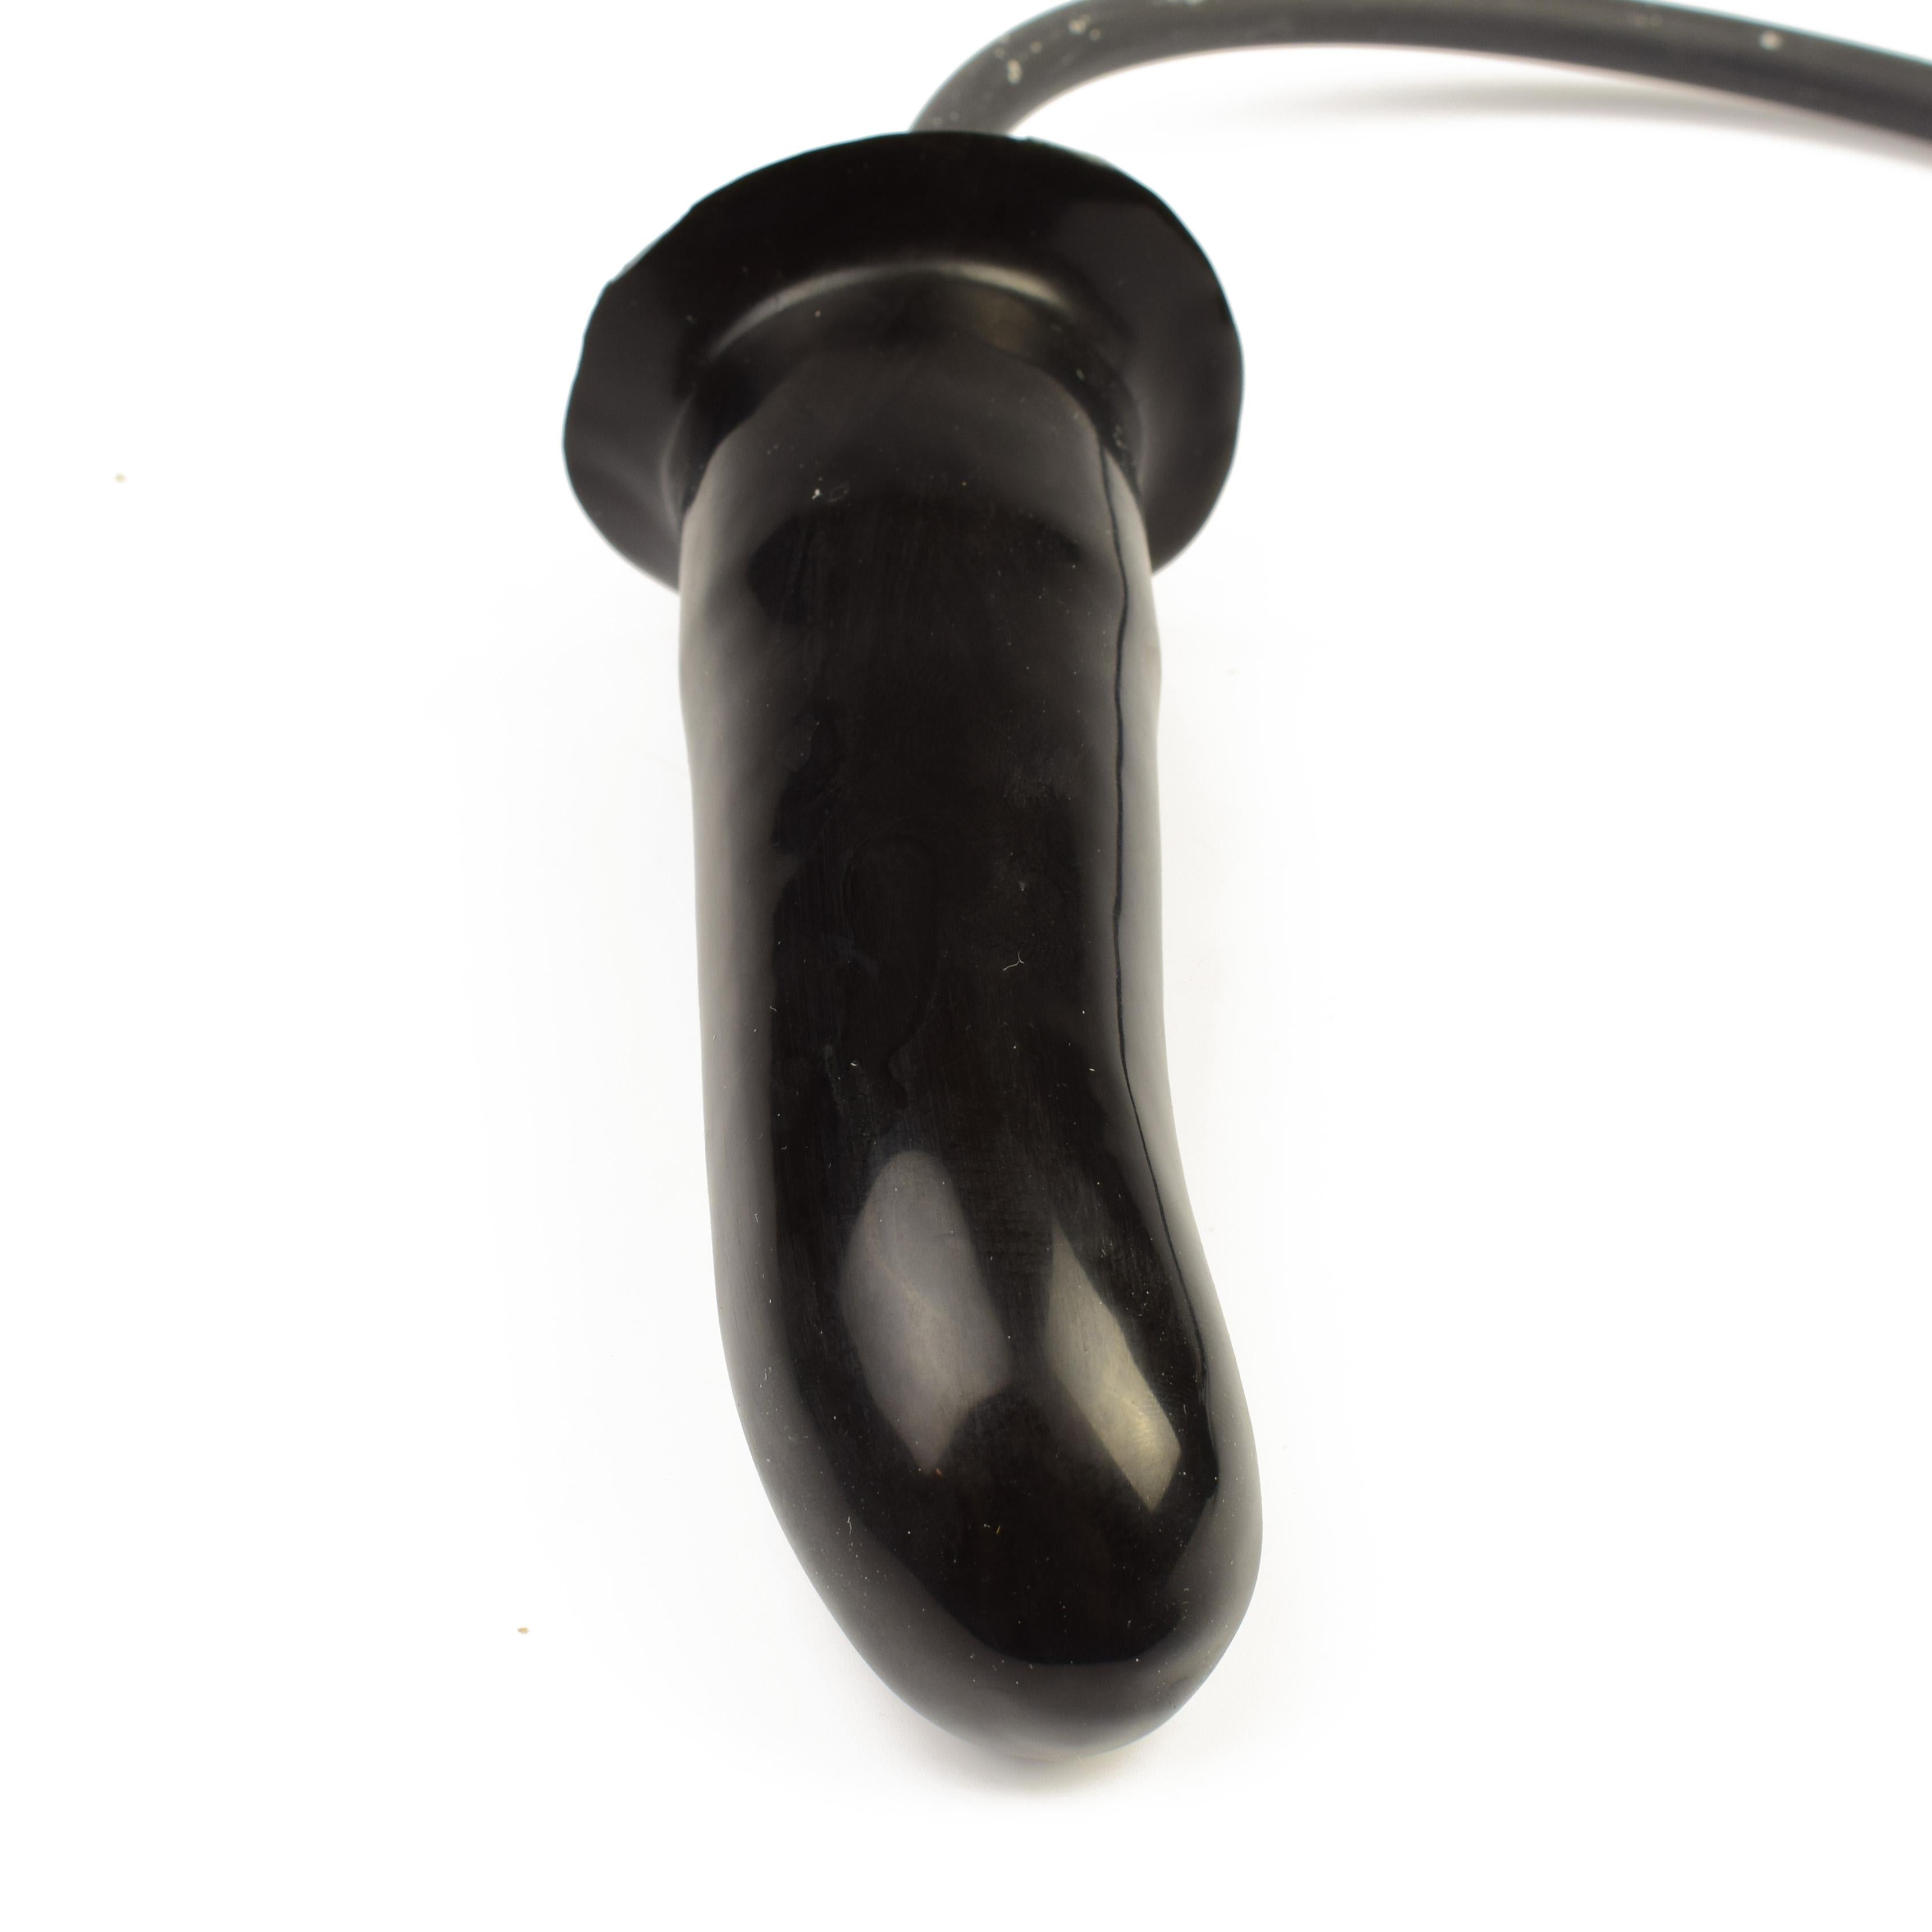 Rubberfashion Latex Dildo - G-Punkt kleiner Dildo glatt - aufblasbar mit Pumpe - Anal Plug für Frauen und Männer 13 x 4 cm